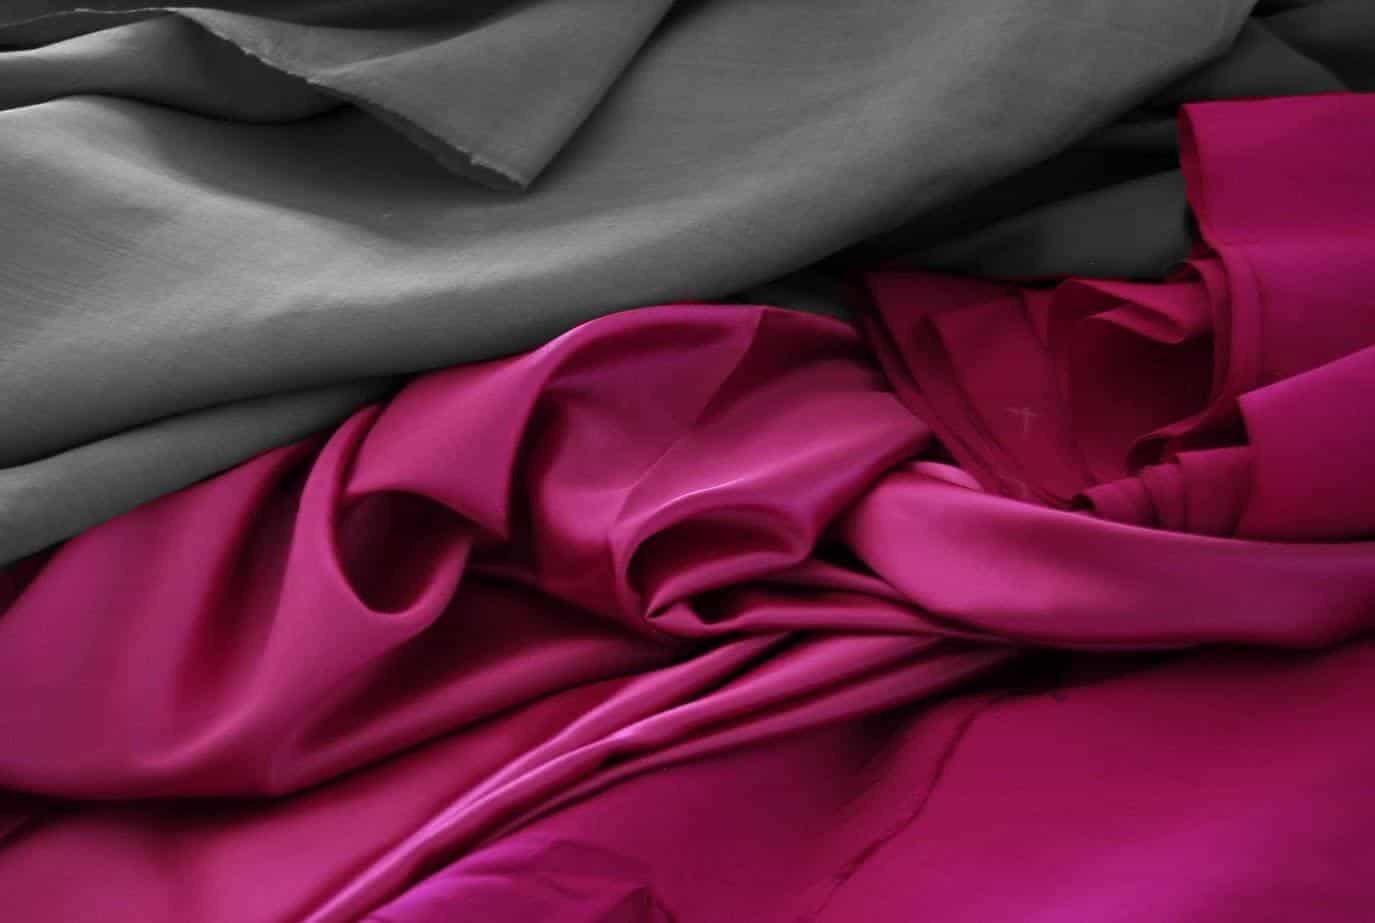  استخدام اقمشة الحرير الطبيعي في إنتاج الملابس الفريدة 